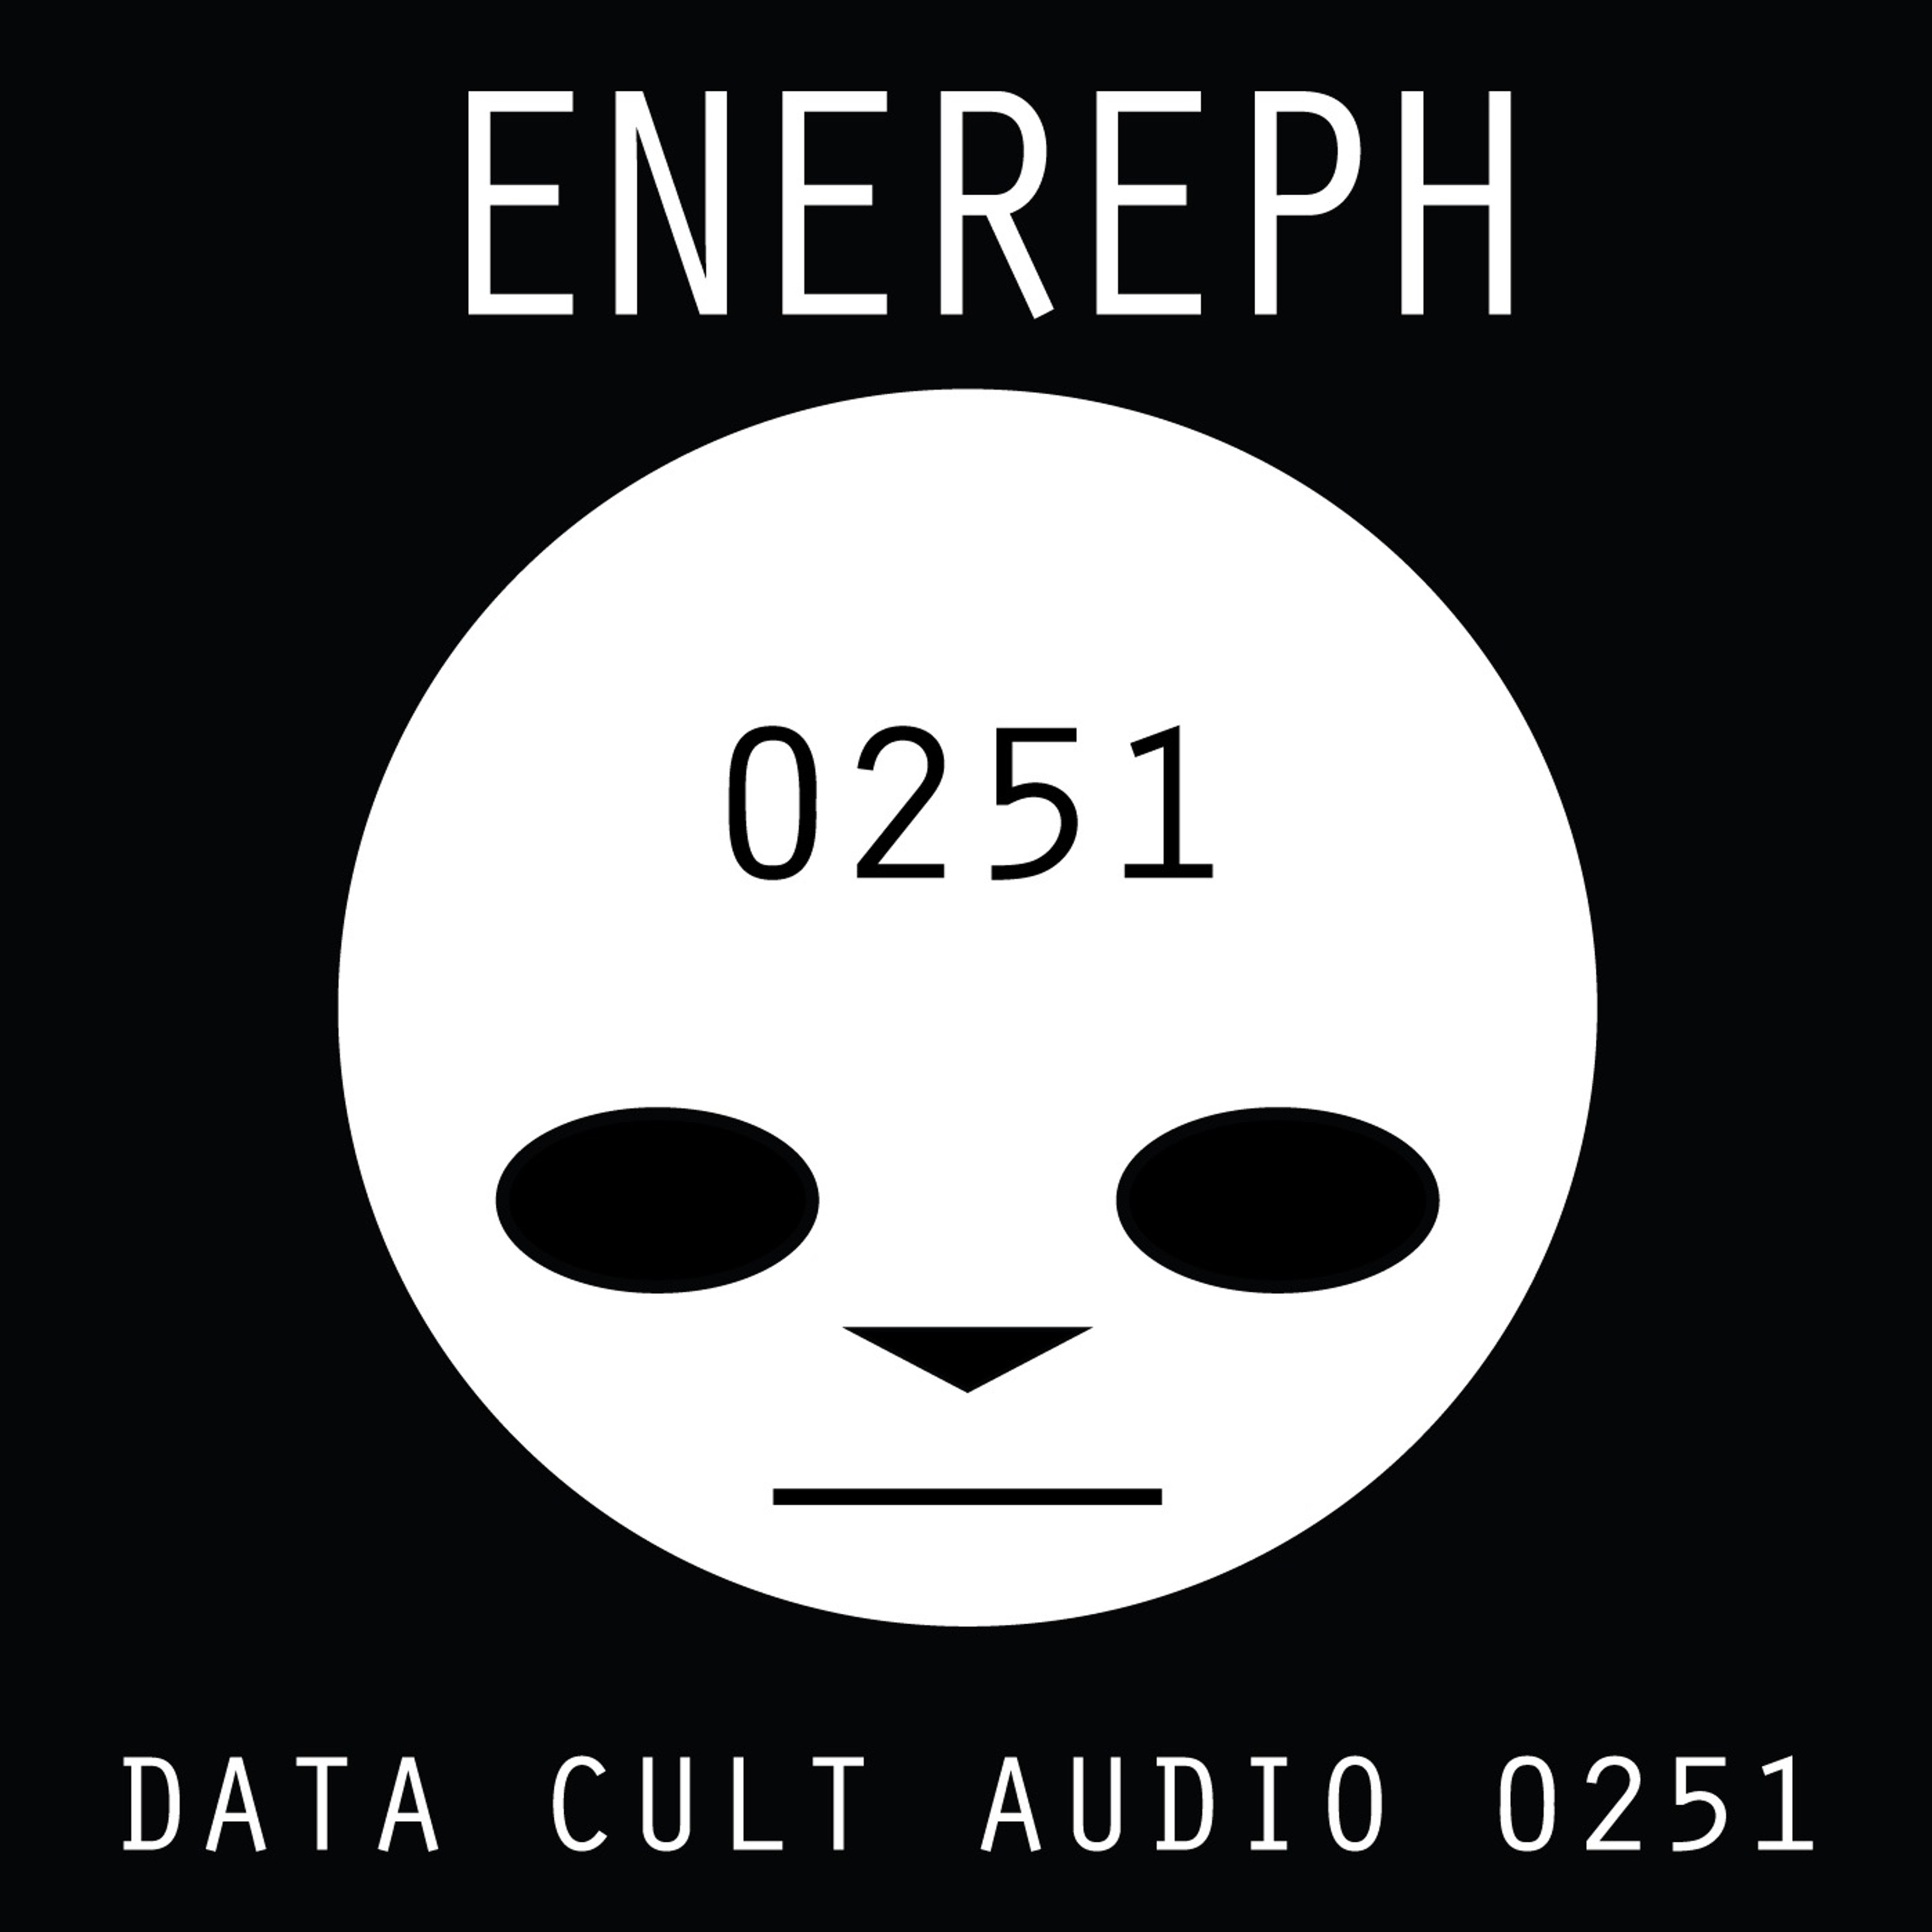 Data Cult Audio 0251 - Enereph